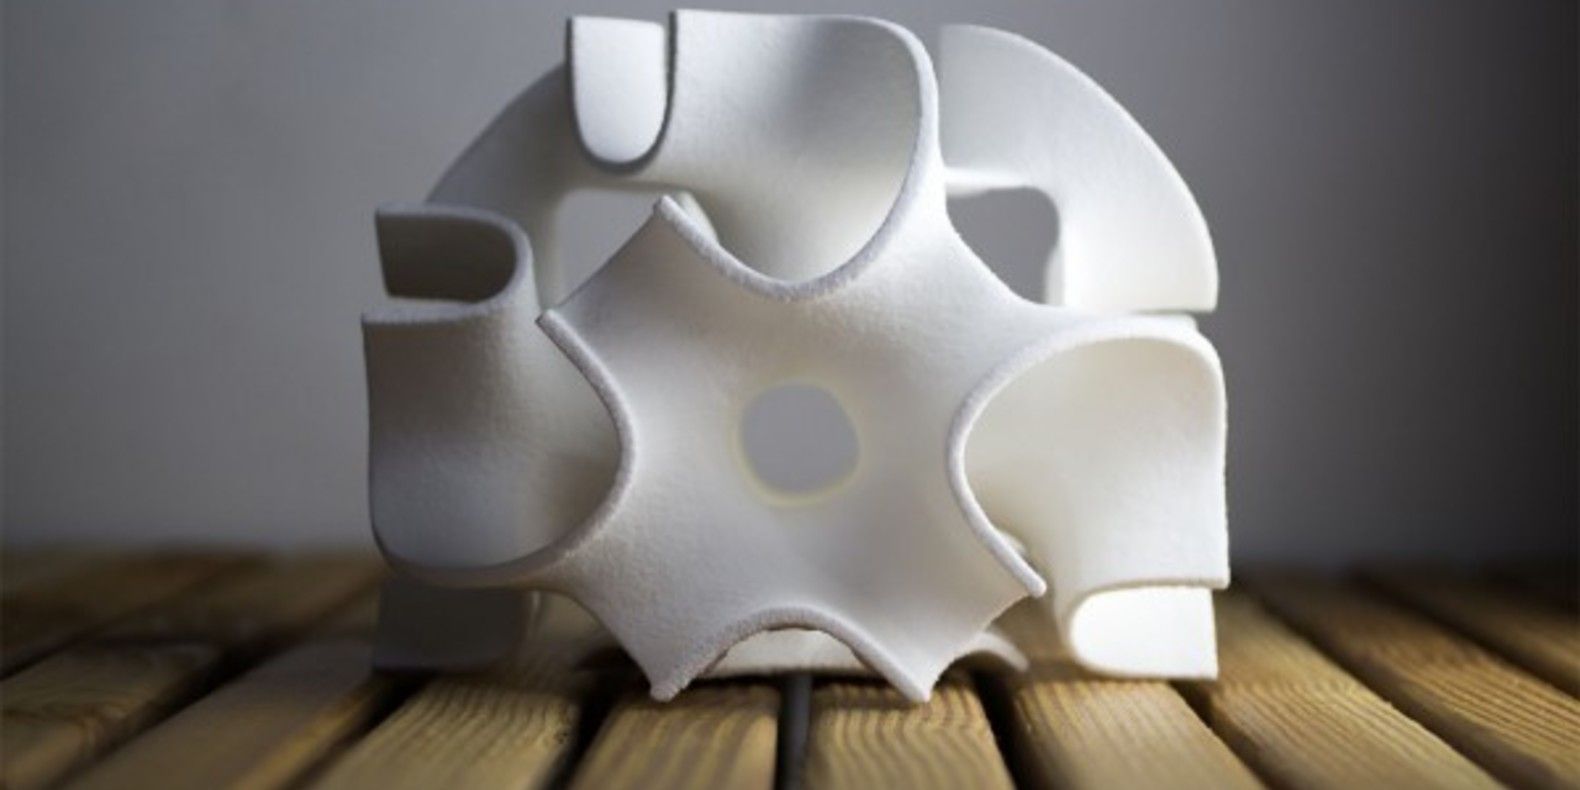 Esculturas de azúcar realizadas con impresión 3D